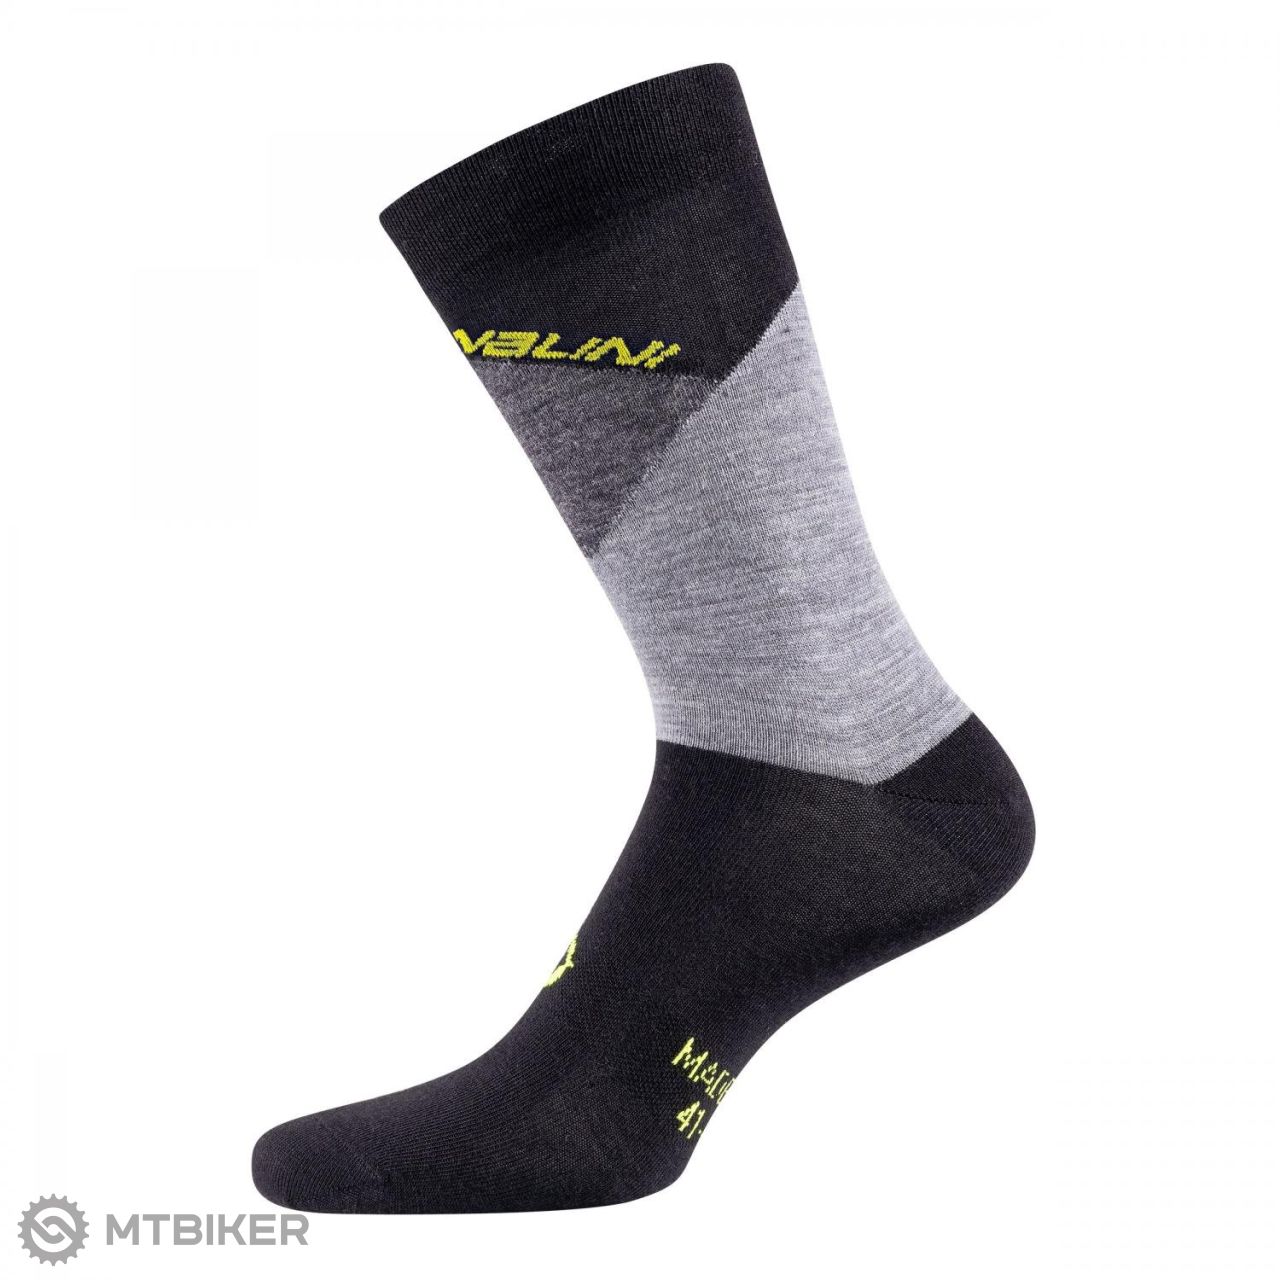 Nalini B0W Wool Socks ponožky, černá/šedá